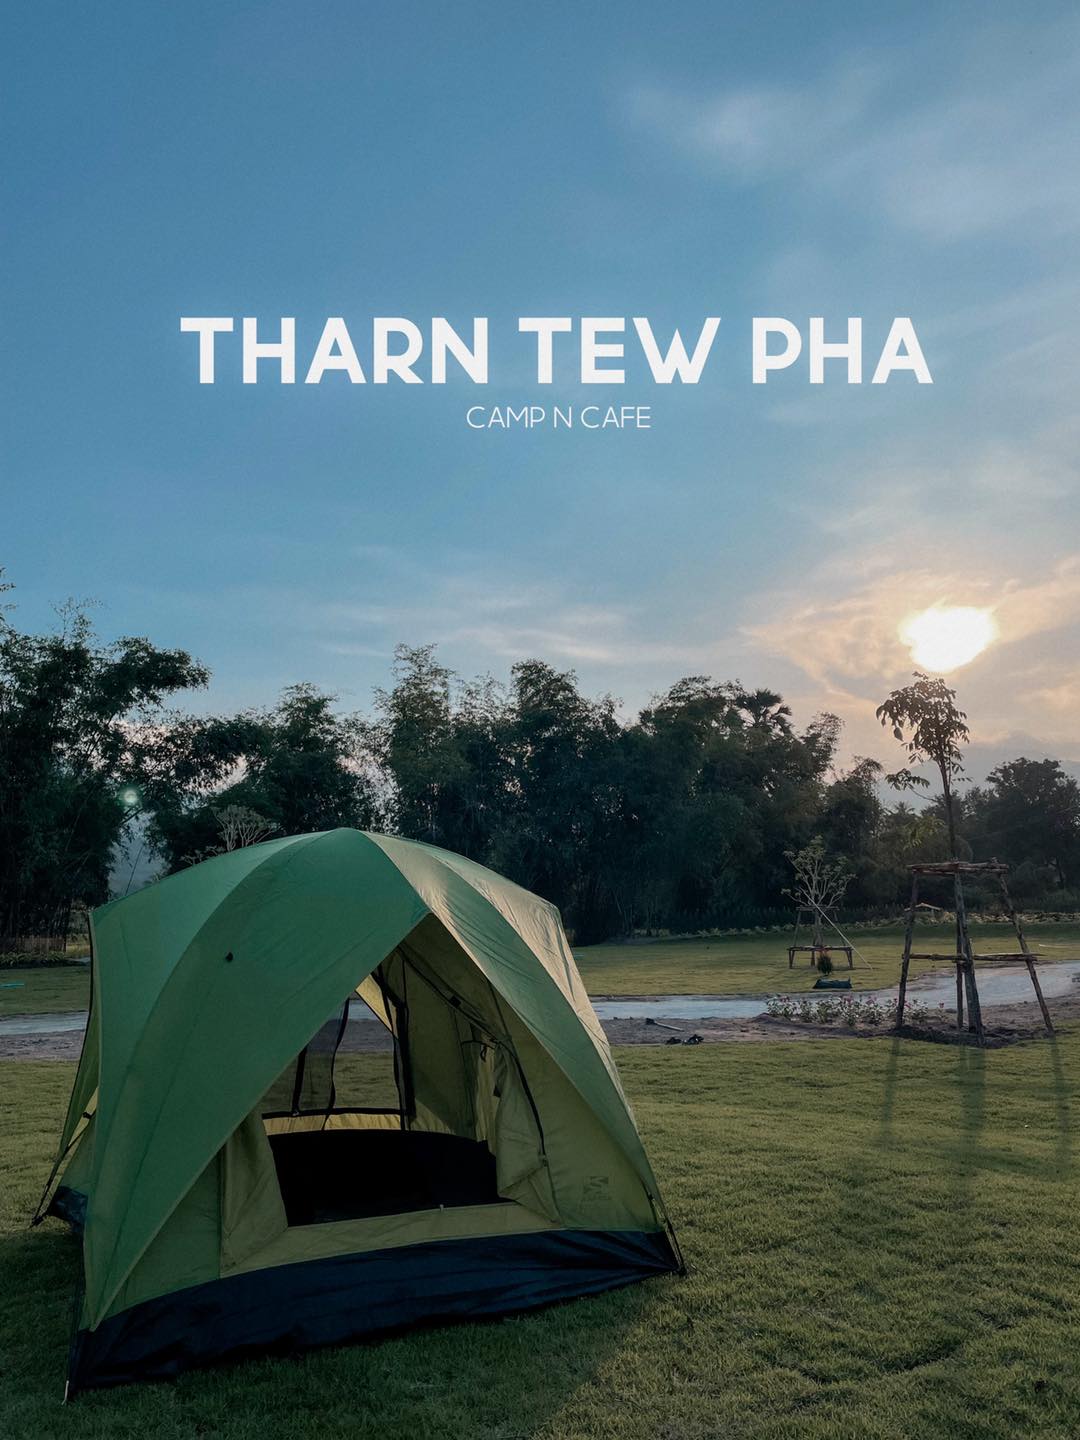 รูป Tharn Tew Pha - Camp n Cafe Chonburi / ธารทิวผา